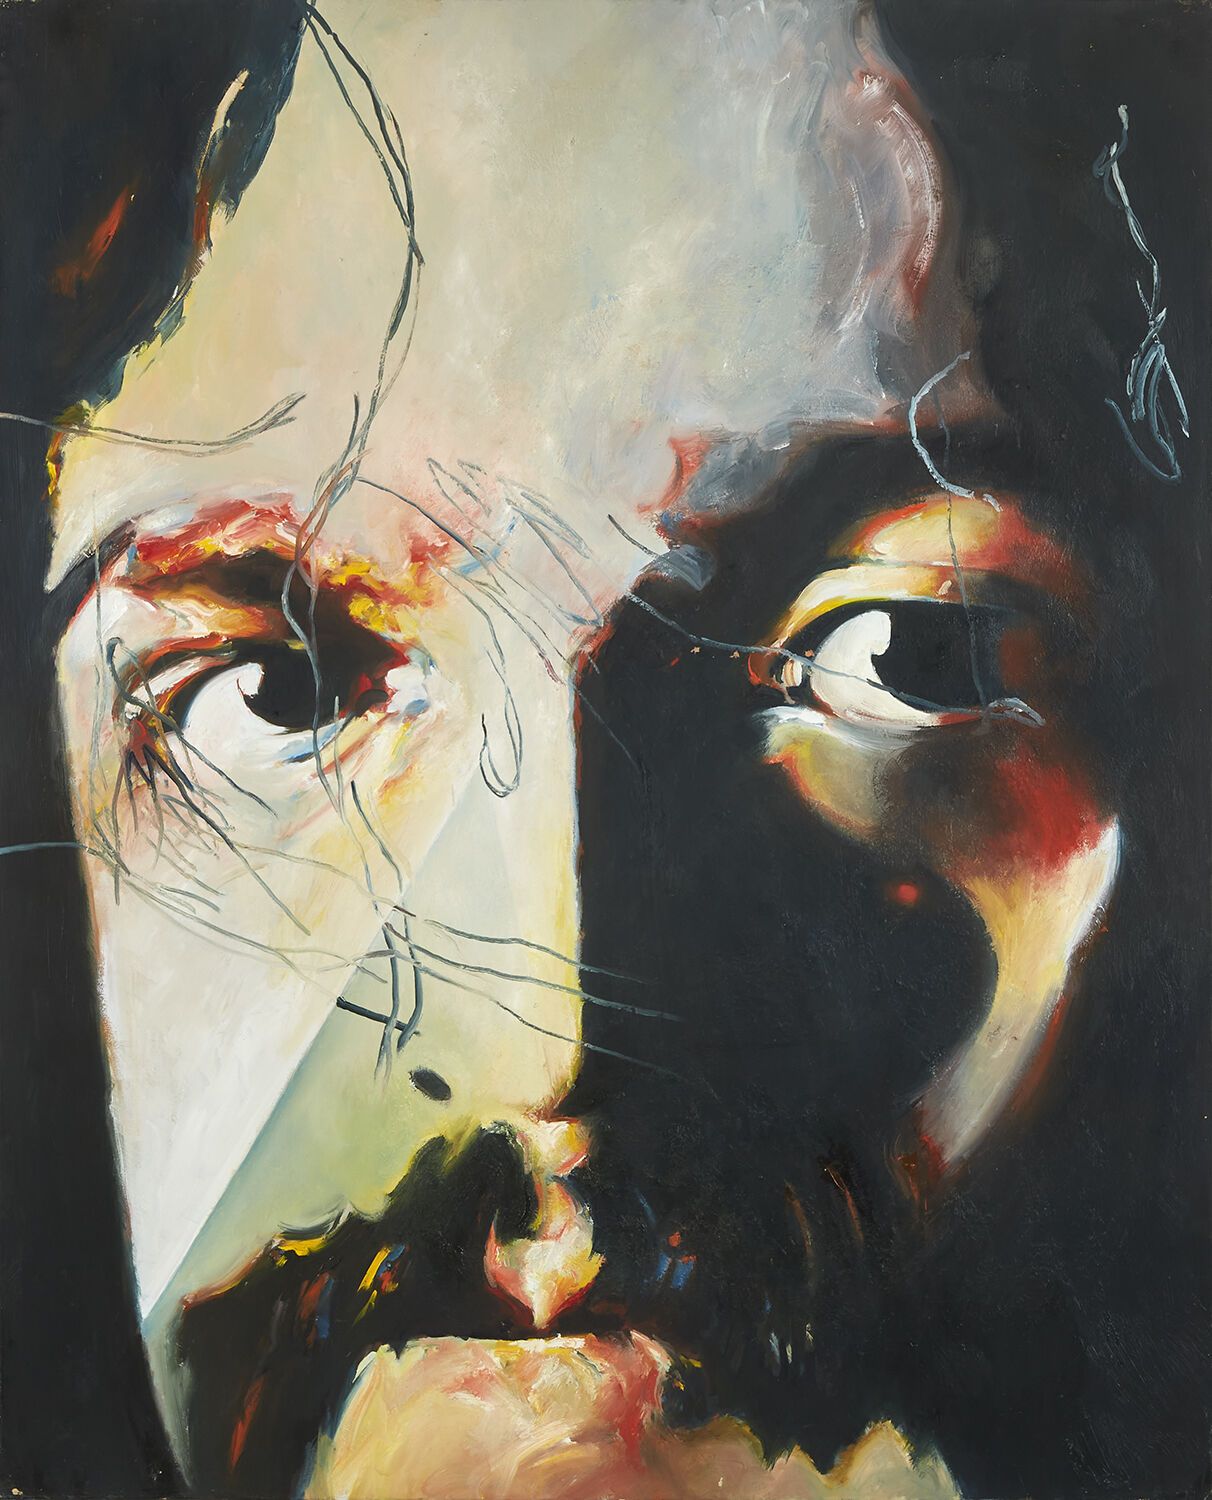 JEAN-PAUL CHAMBAS JEAN-PAUL CHAMBAS (NÉ EN 1947)
Portrait de Debussy II, 2012 
A&hellip;